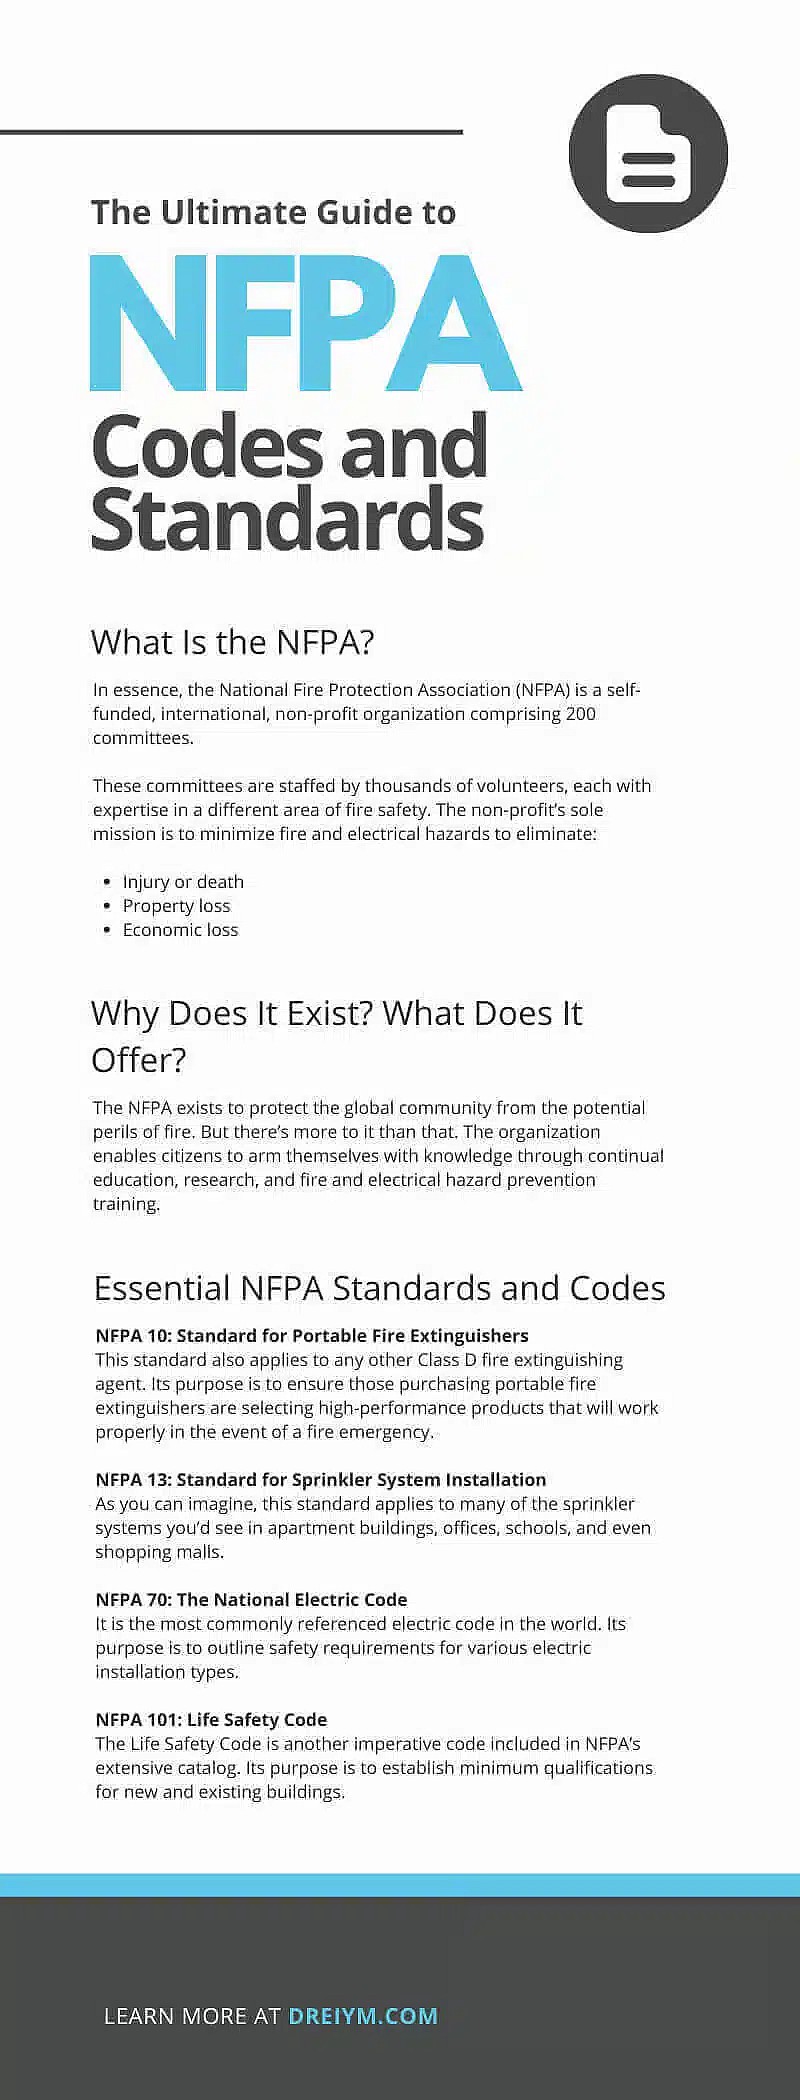 NFPA 规范和标准终极指南